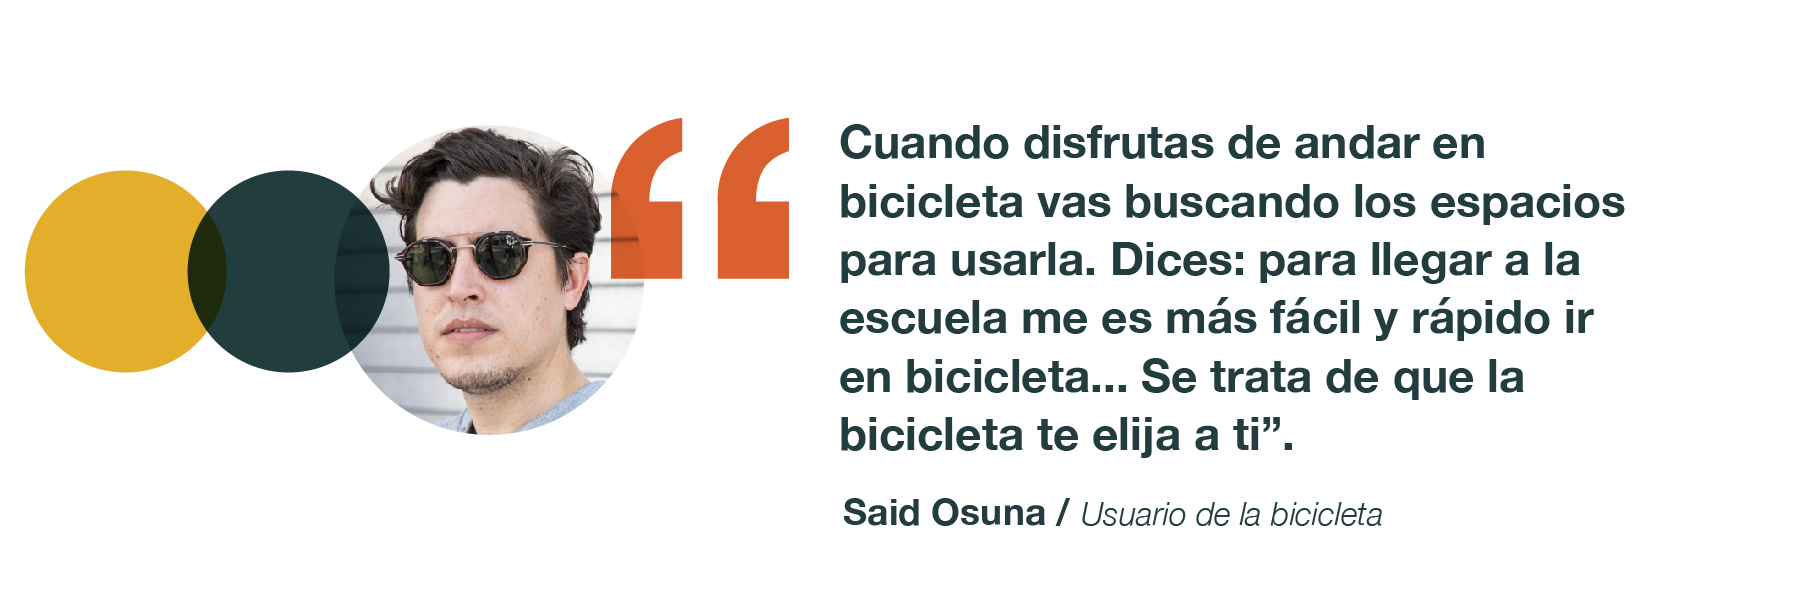 Said Osuna docente y funcionario que recorre hasta 30 kilómetros al día en bicicleta